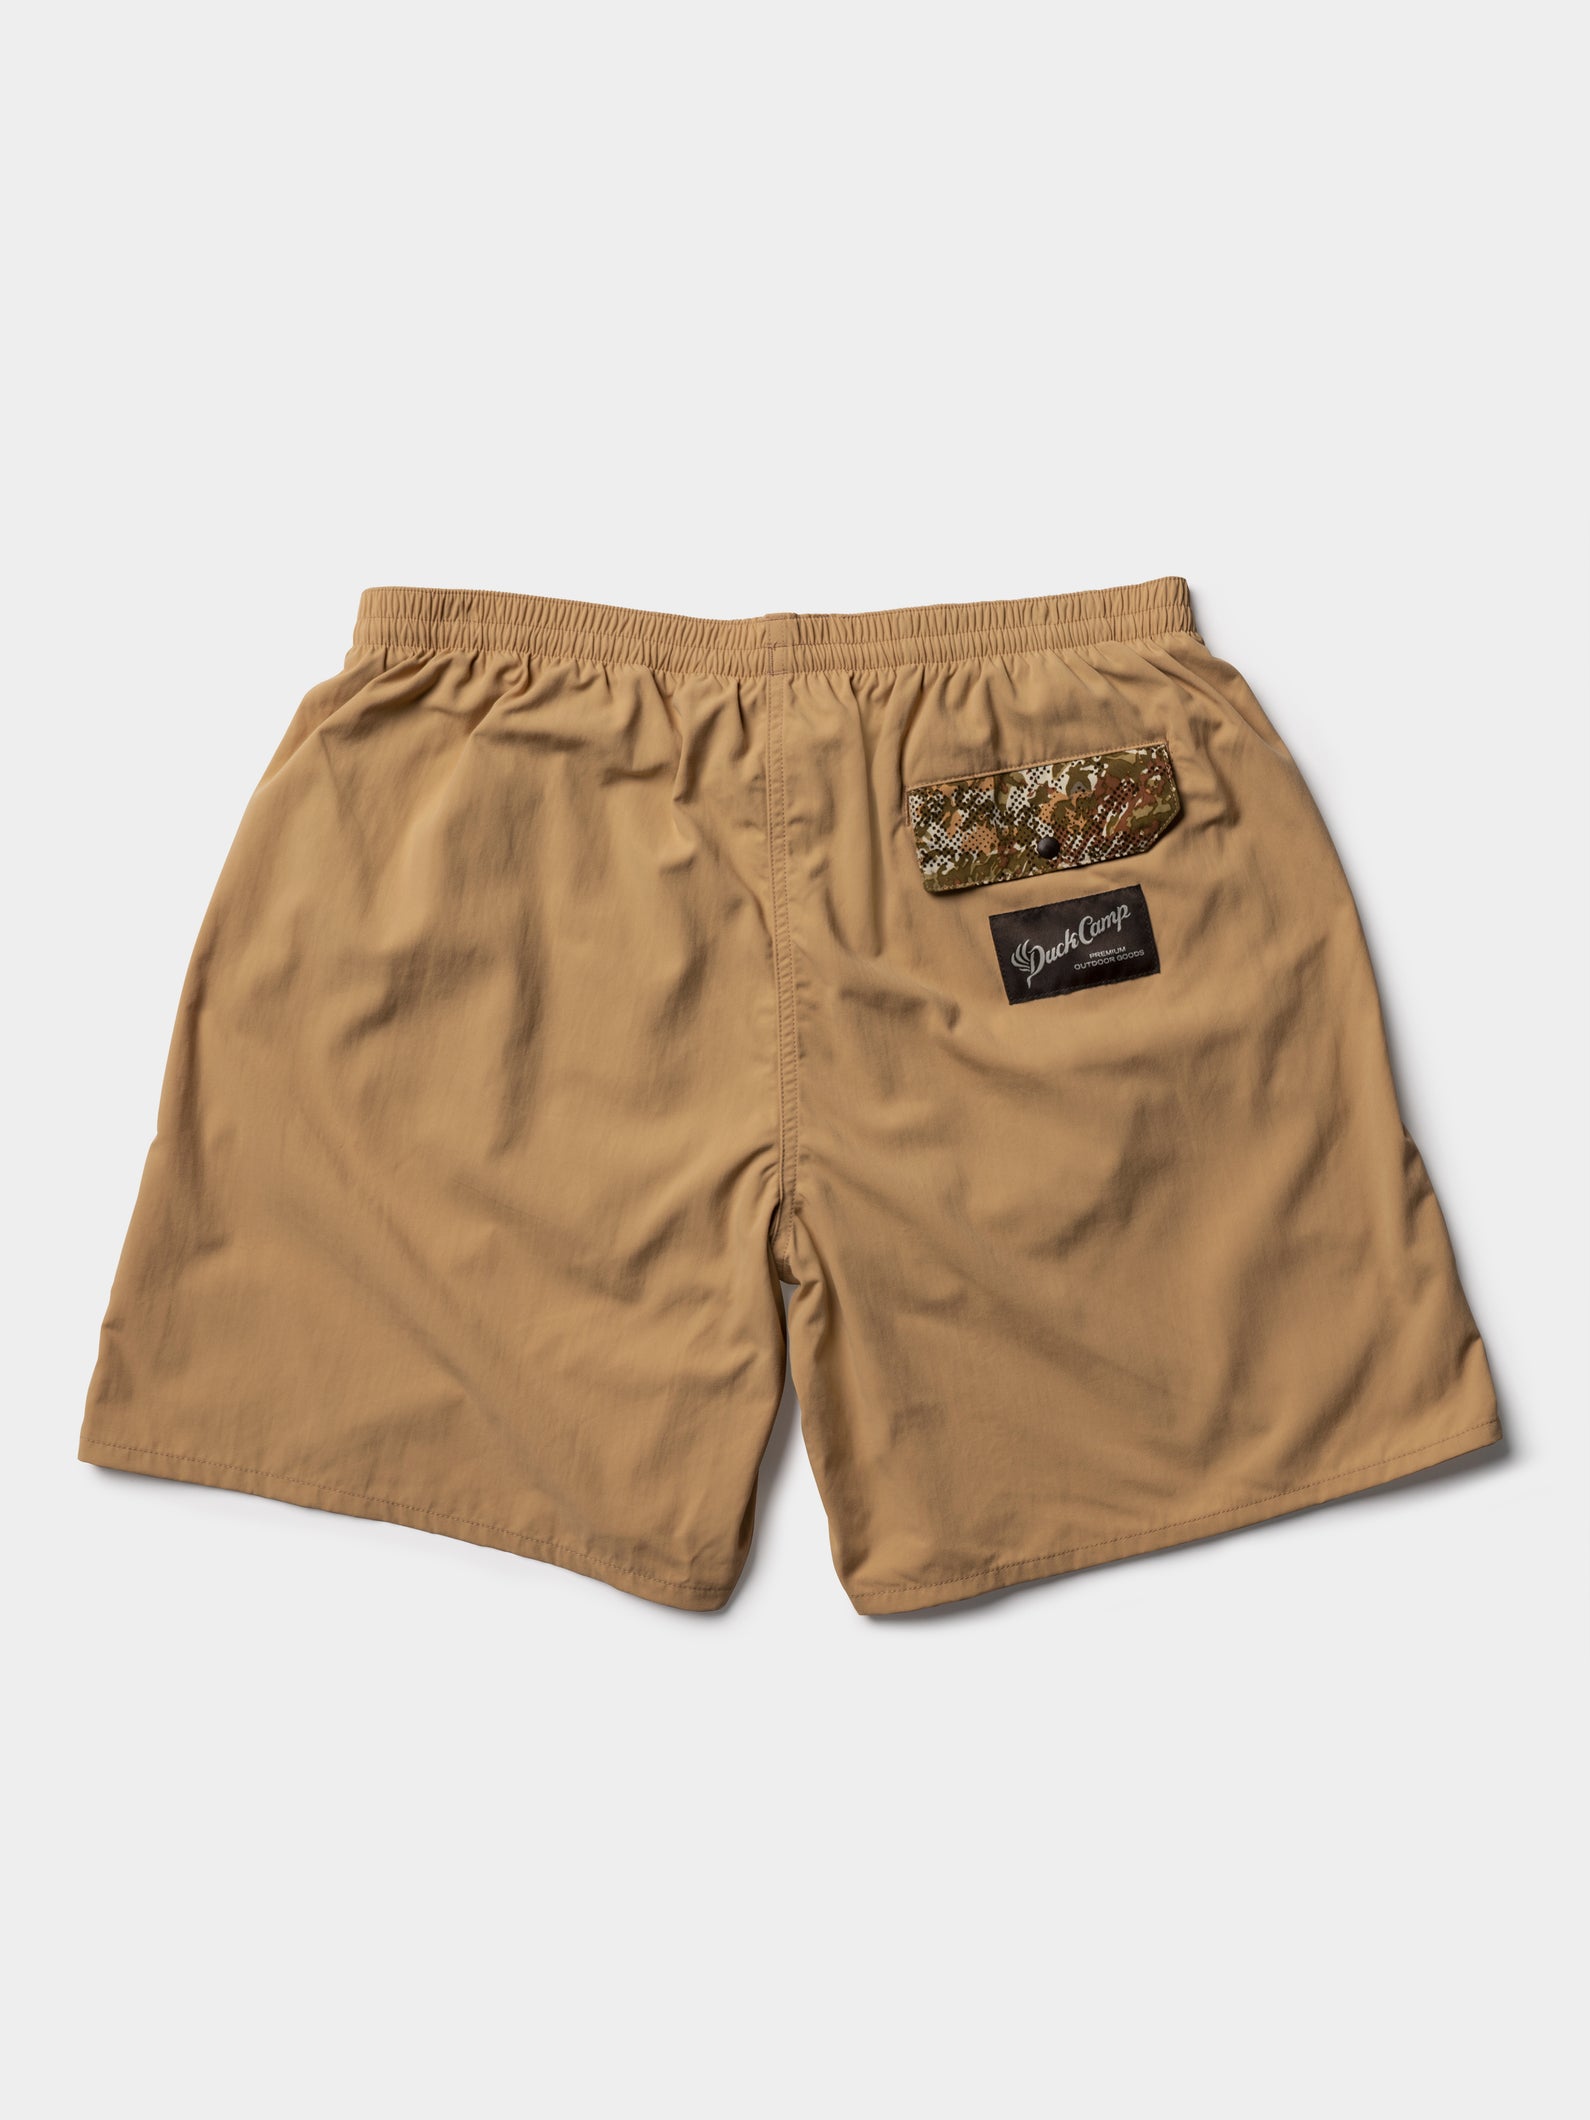 Scout Shorts 7" - Lark / Midland